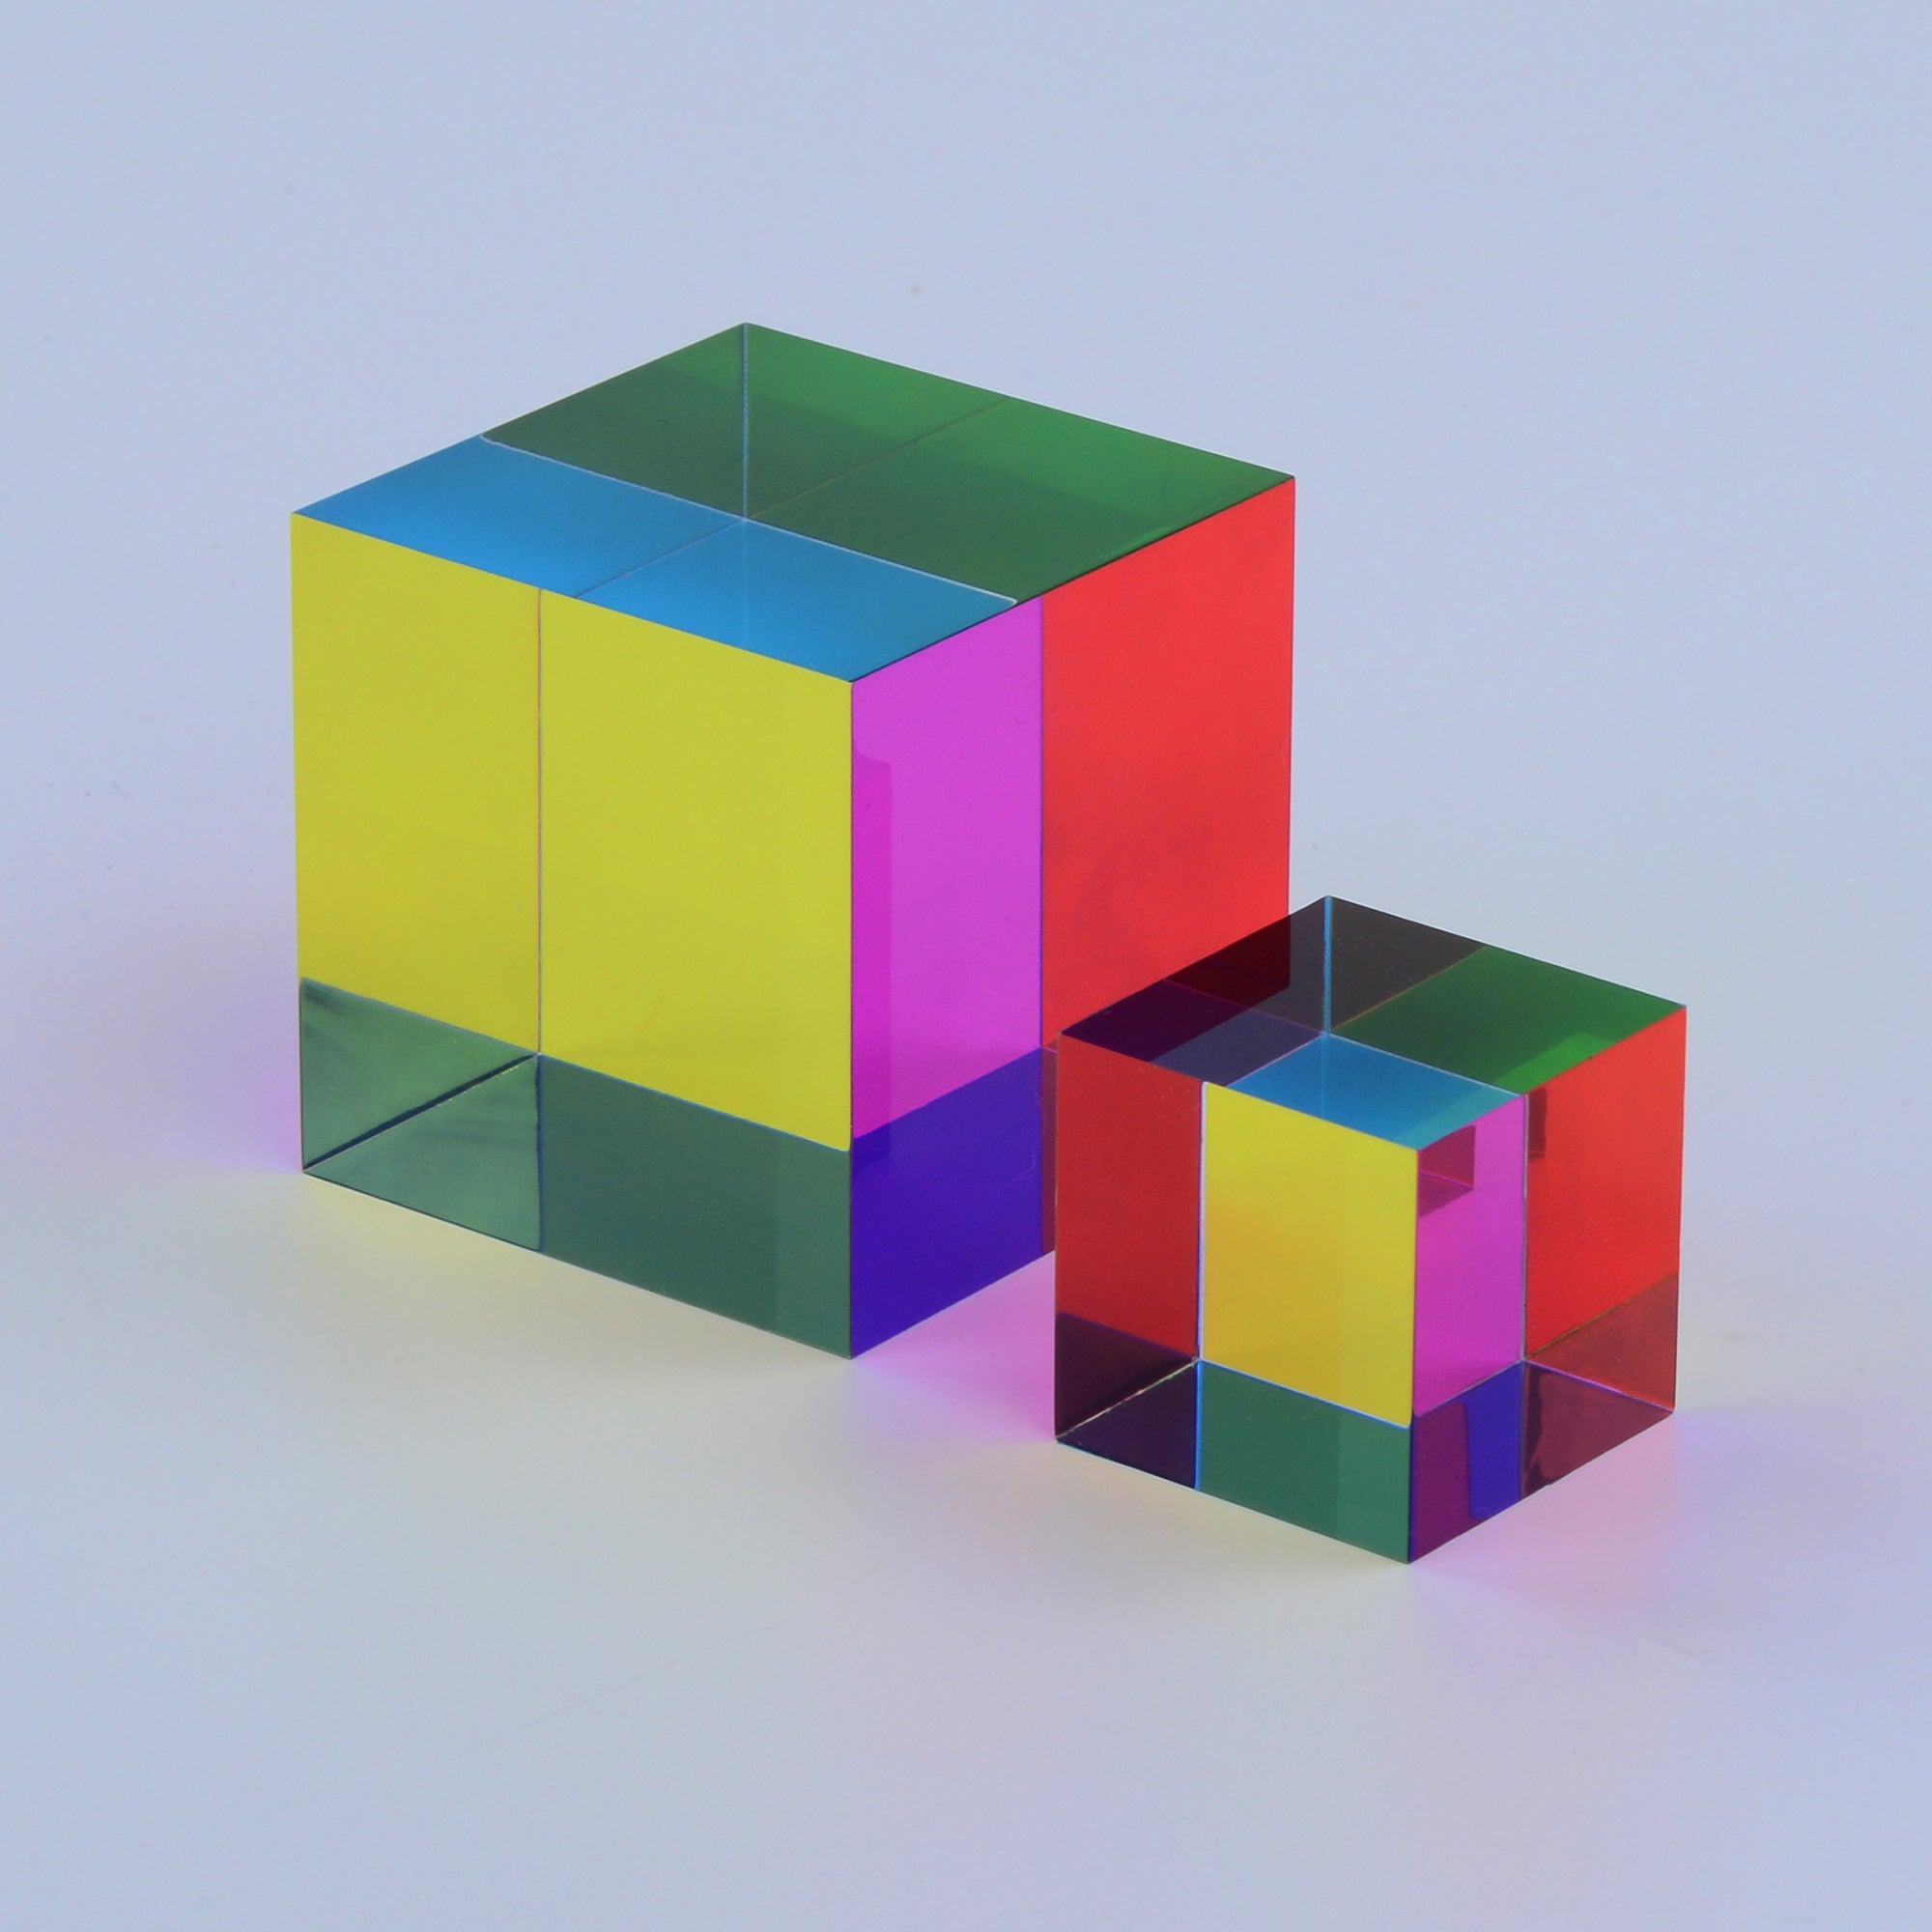 The Original Cube